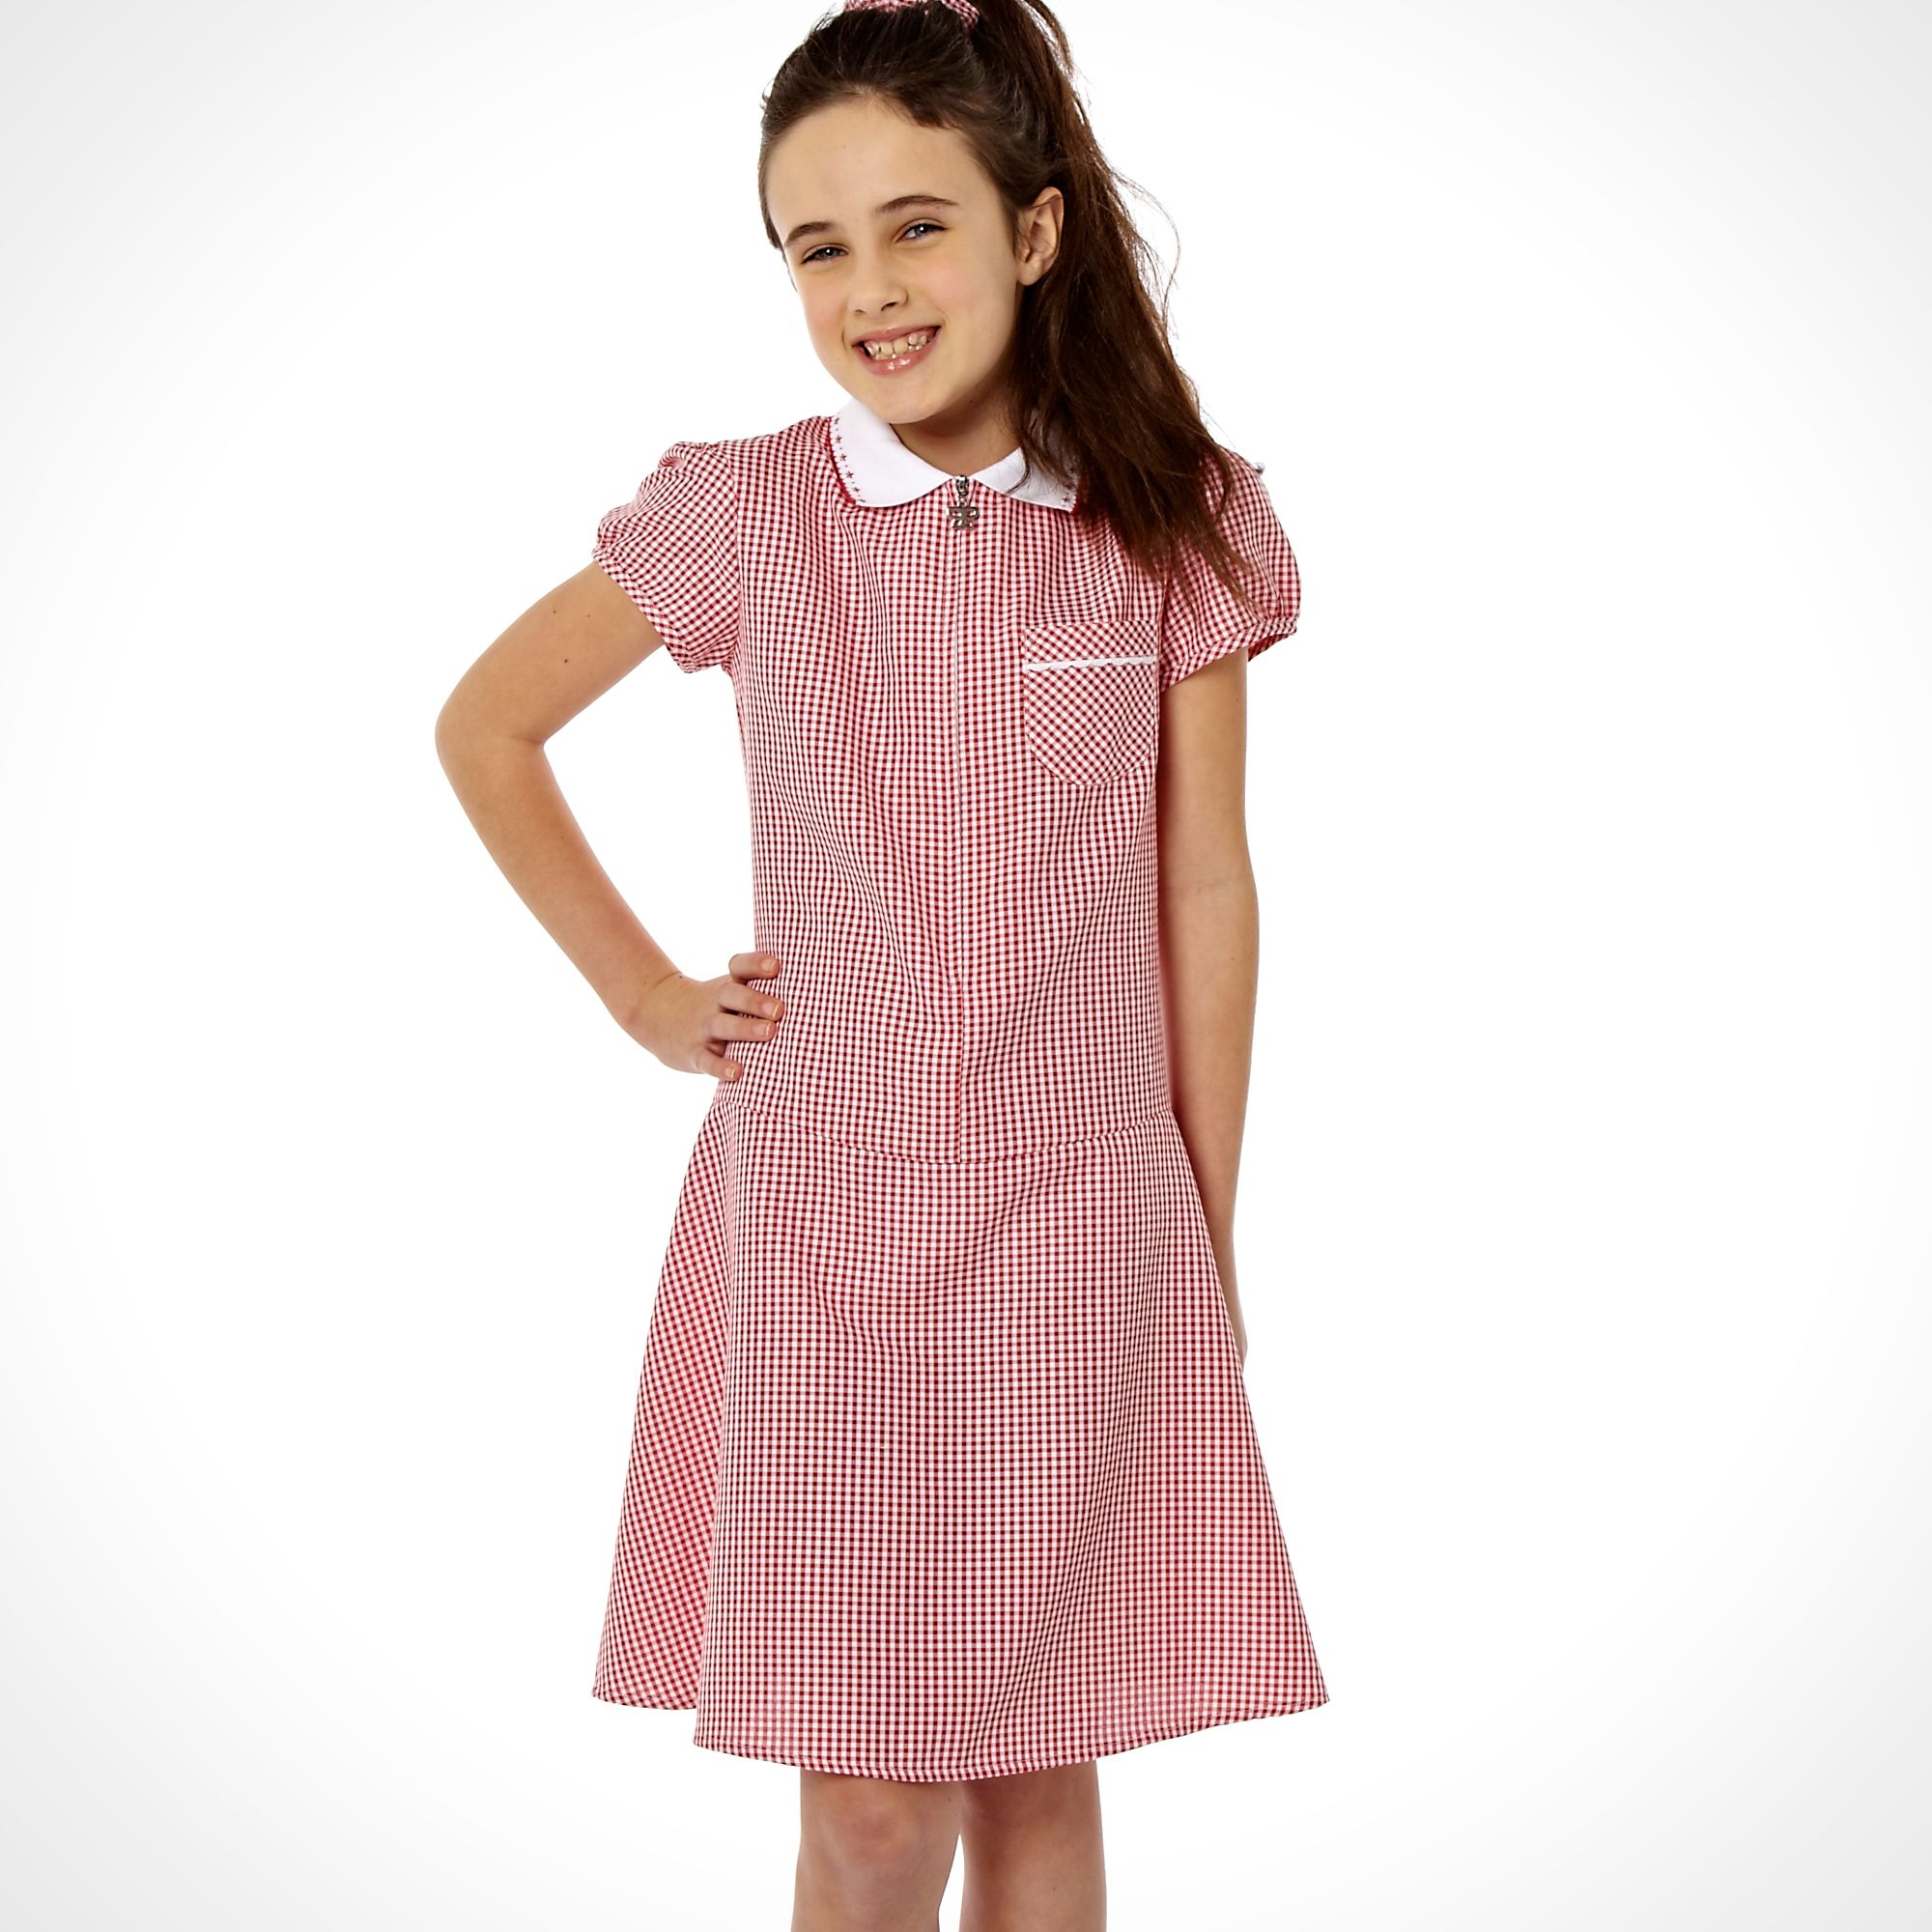 Details about Debenhams Girl's Red Summer School Uniform Dress